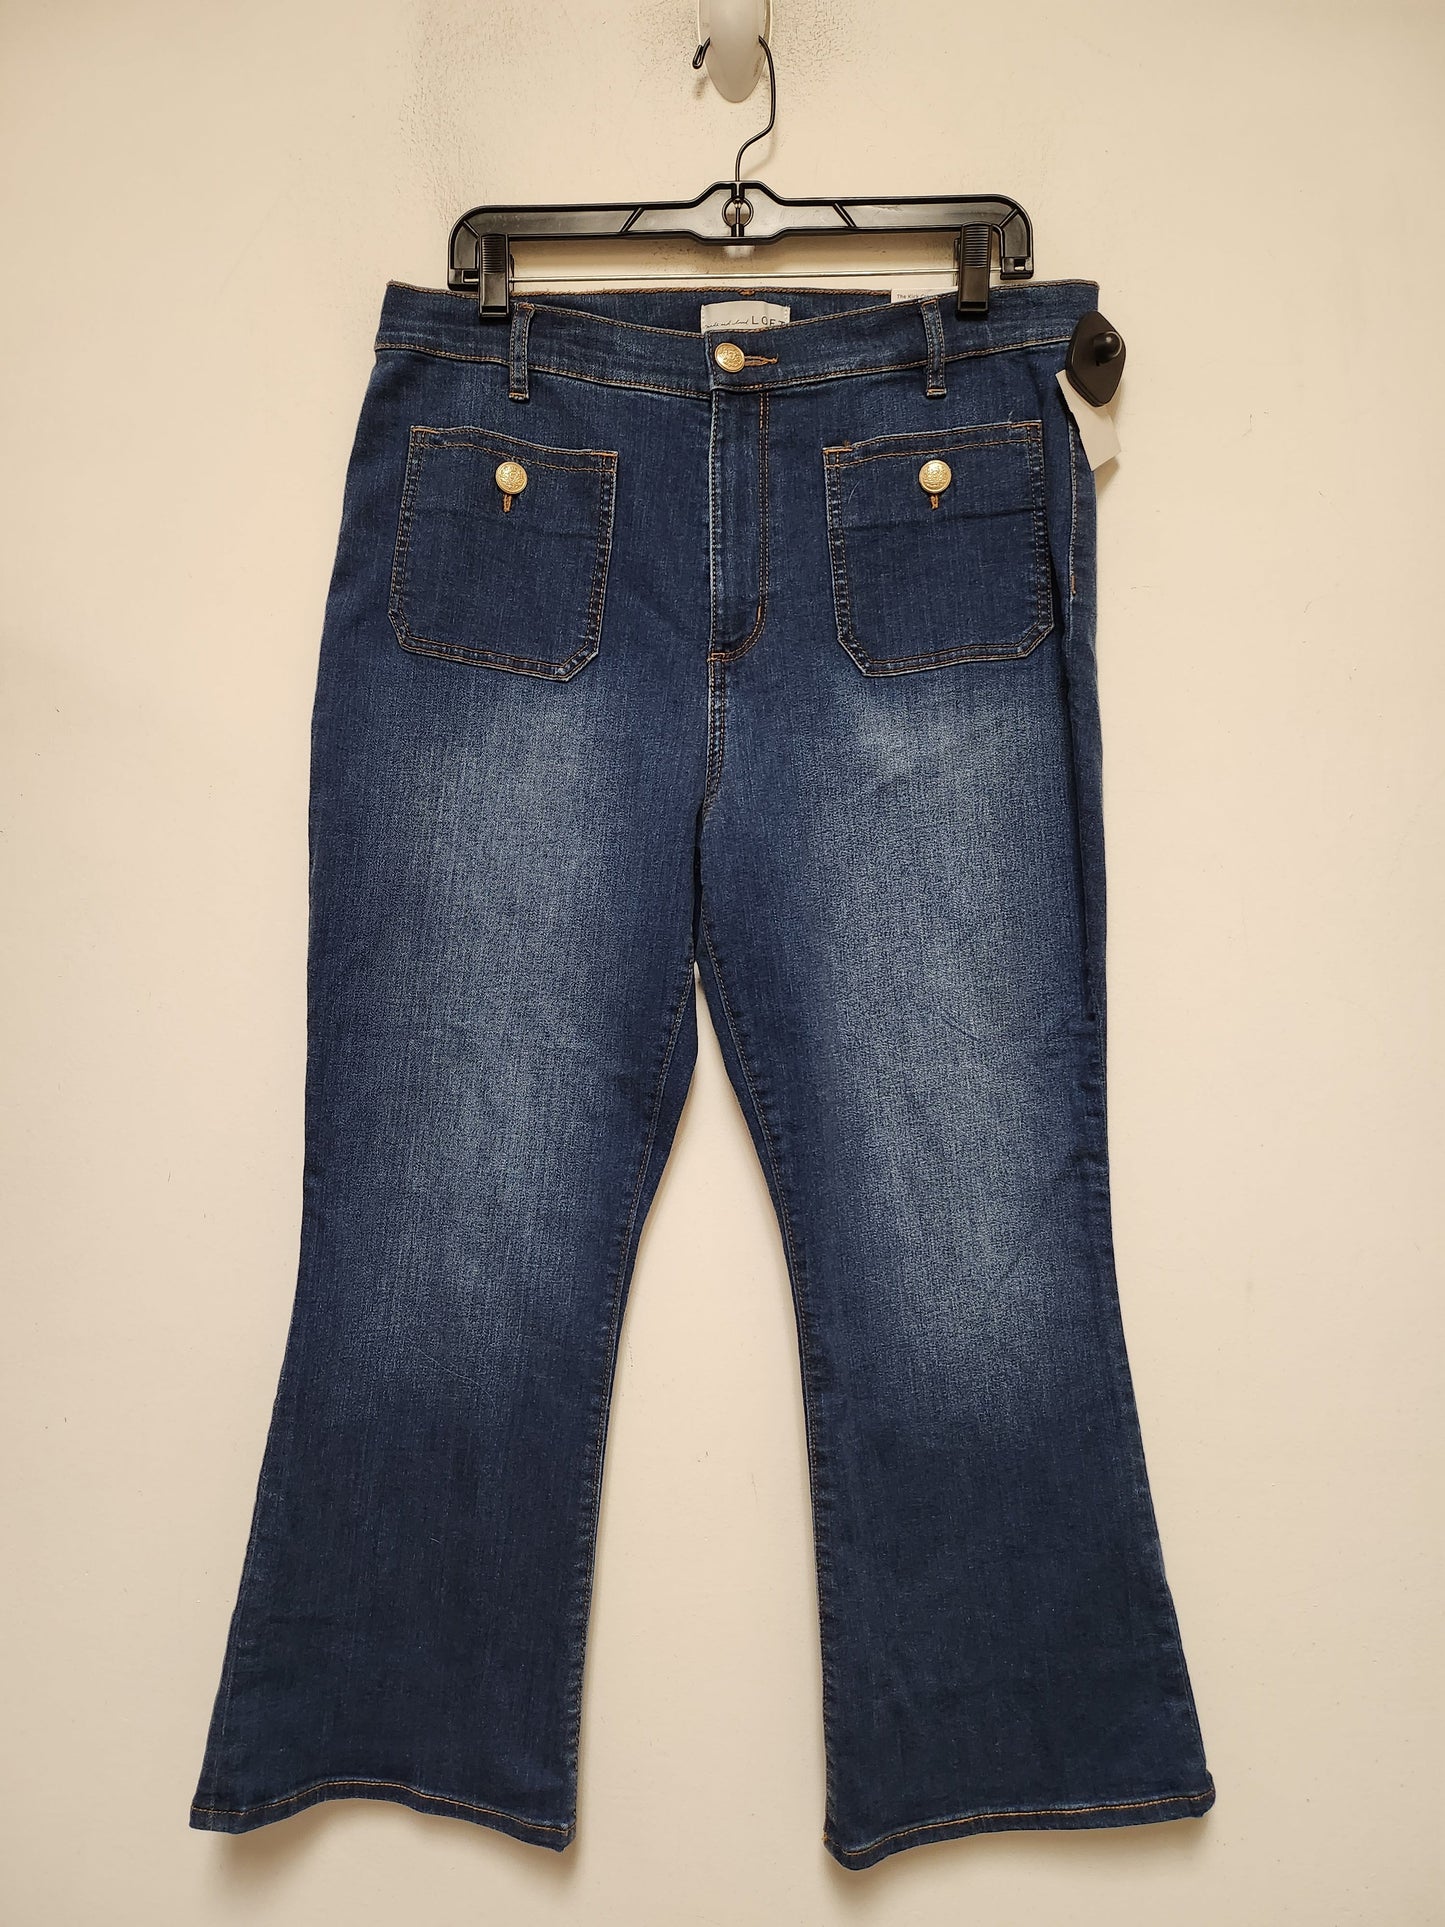 Blue Denim Jeans Wide Leg Loft, Size 10